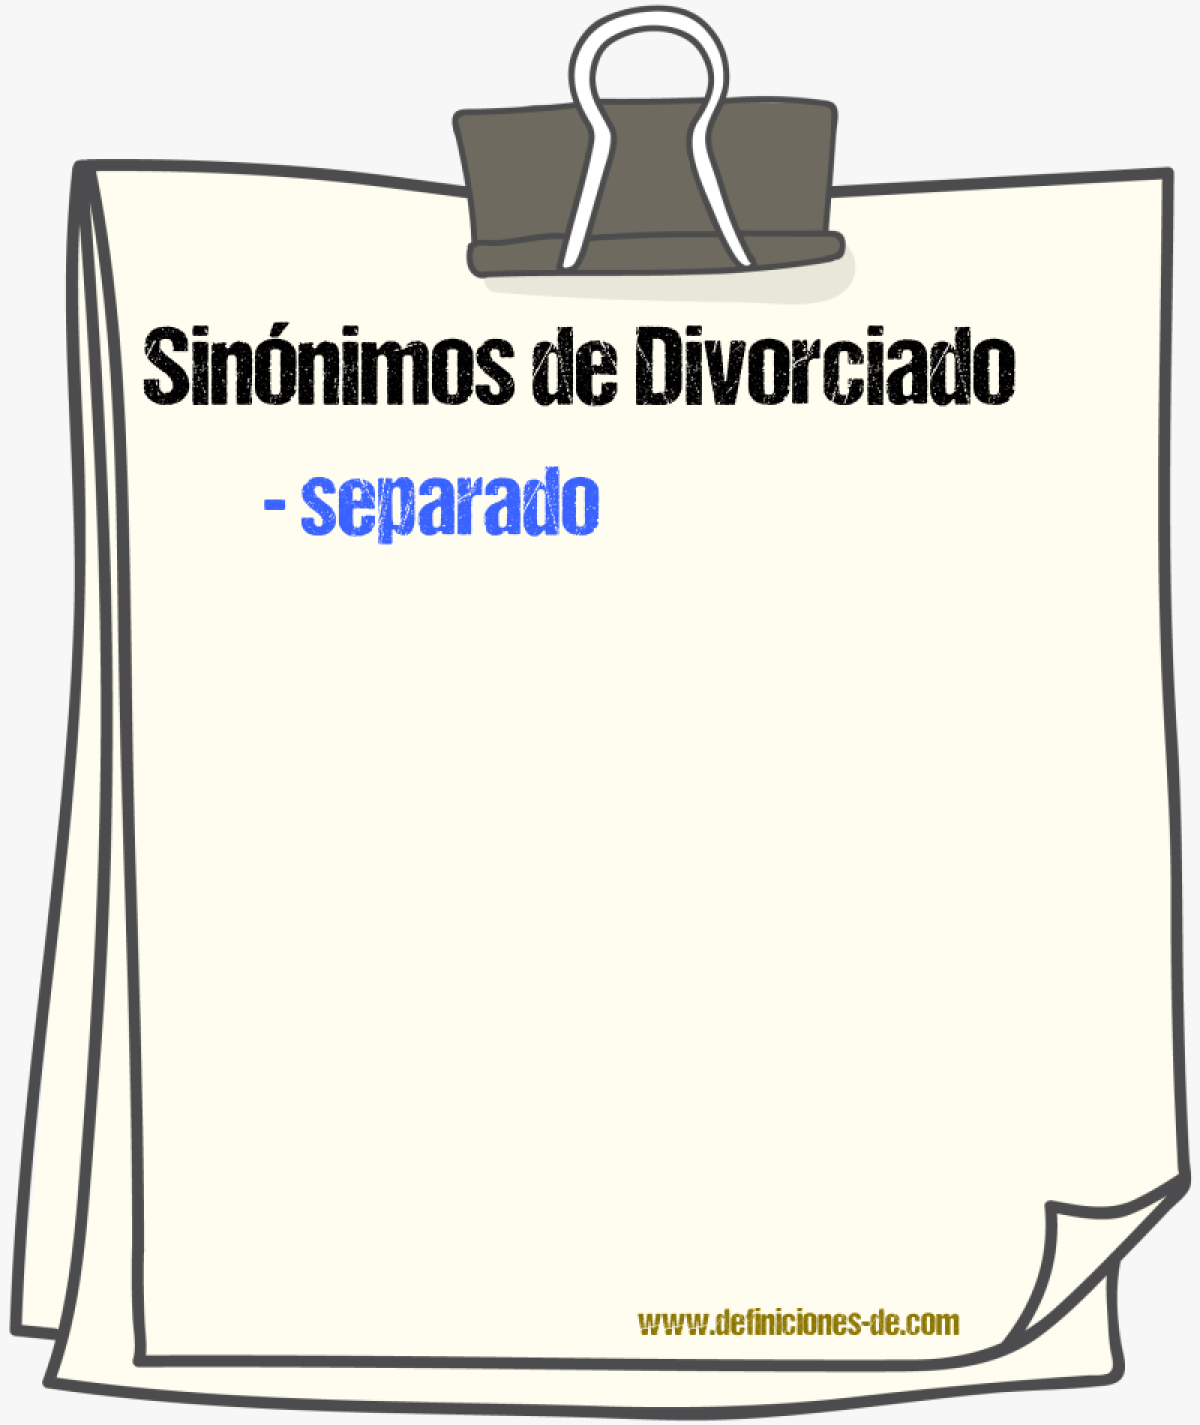 Sinónimos de divorciado